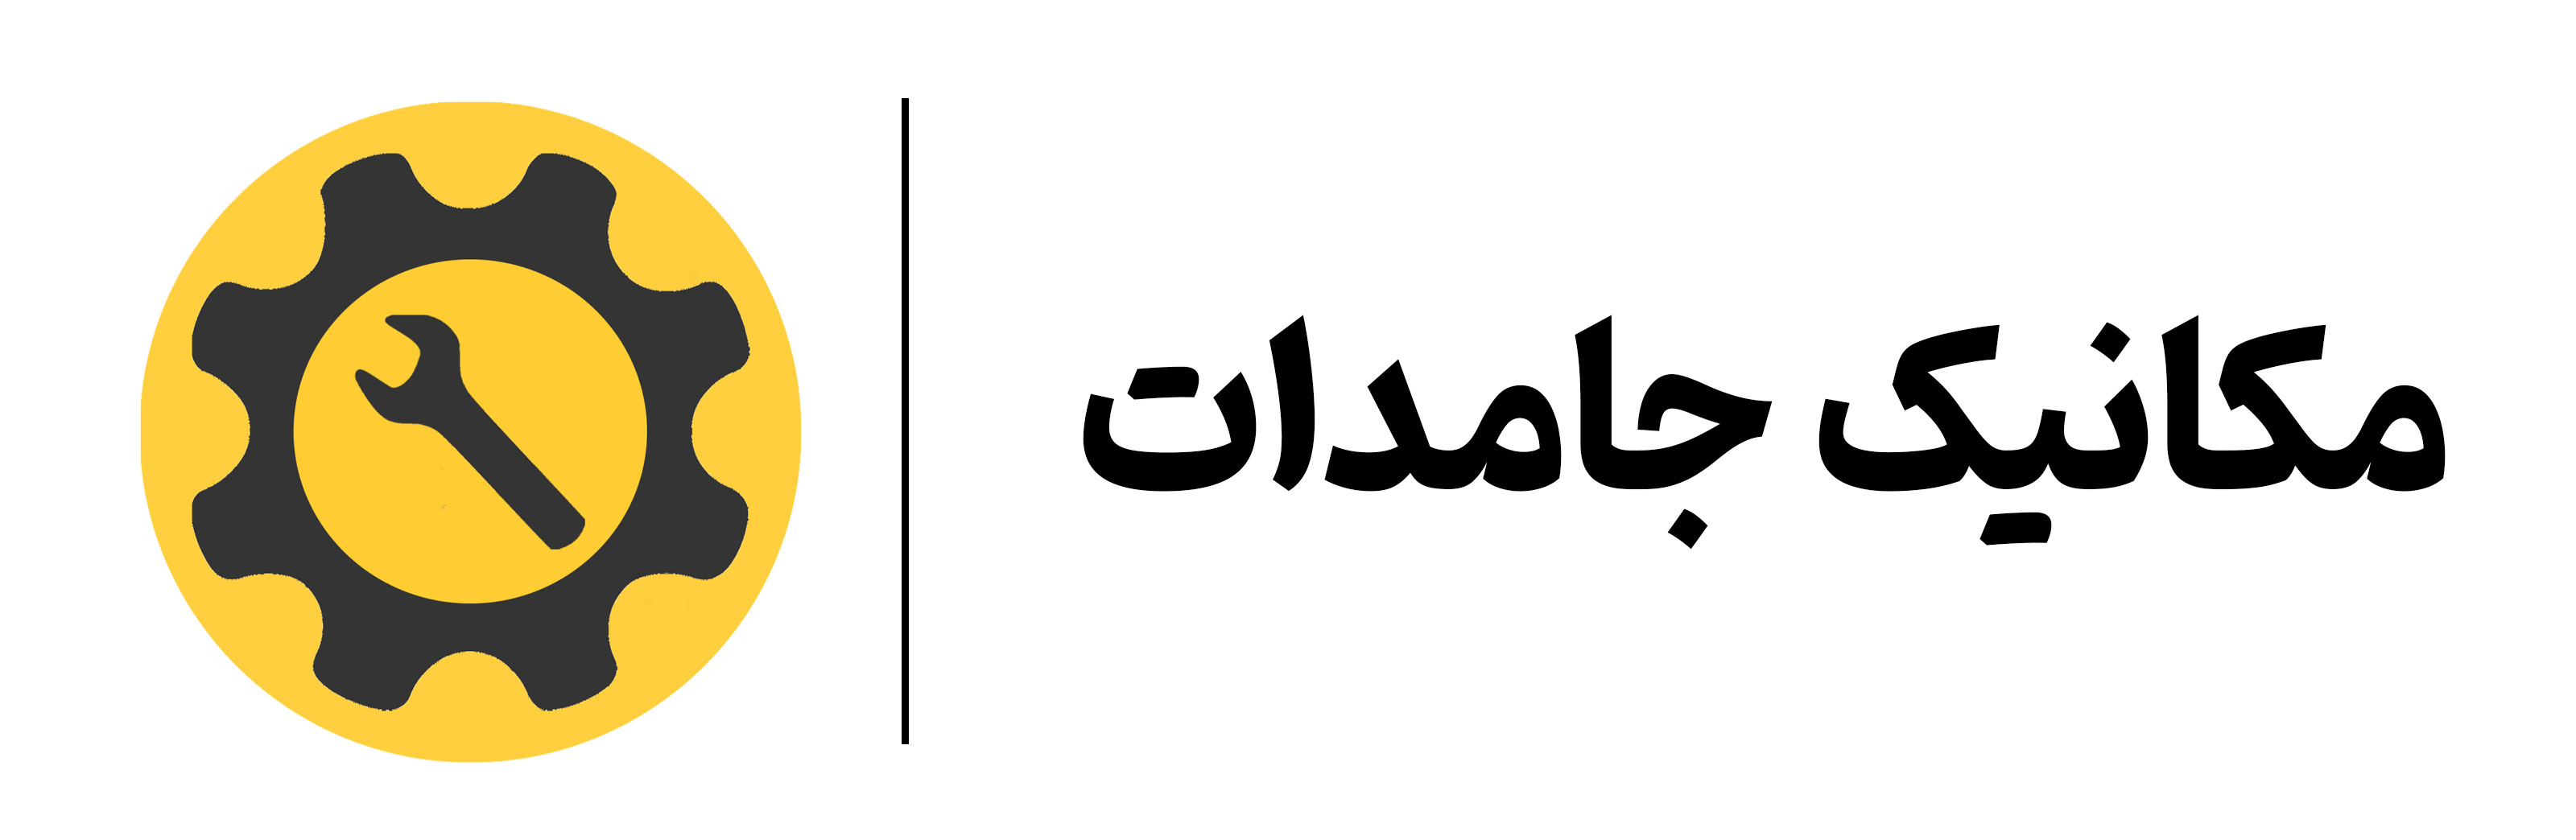 SolidMechanics logo mehregan esfahan